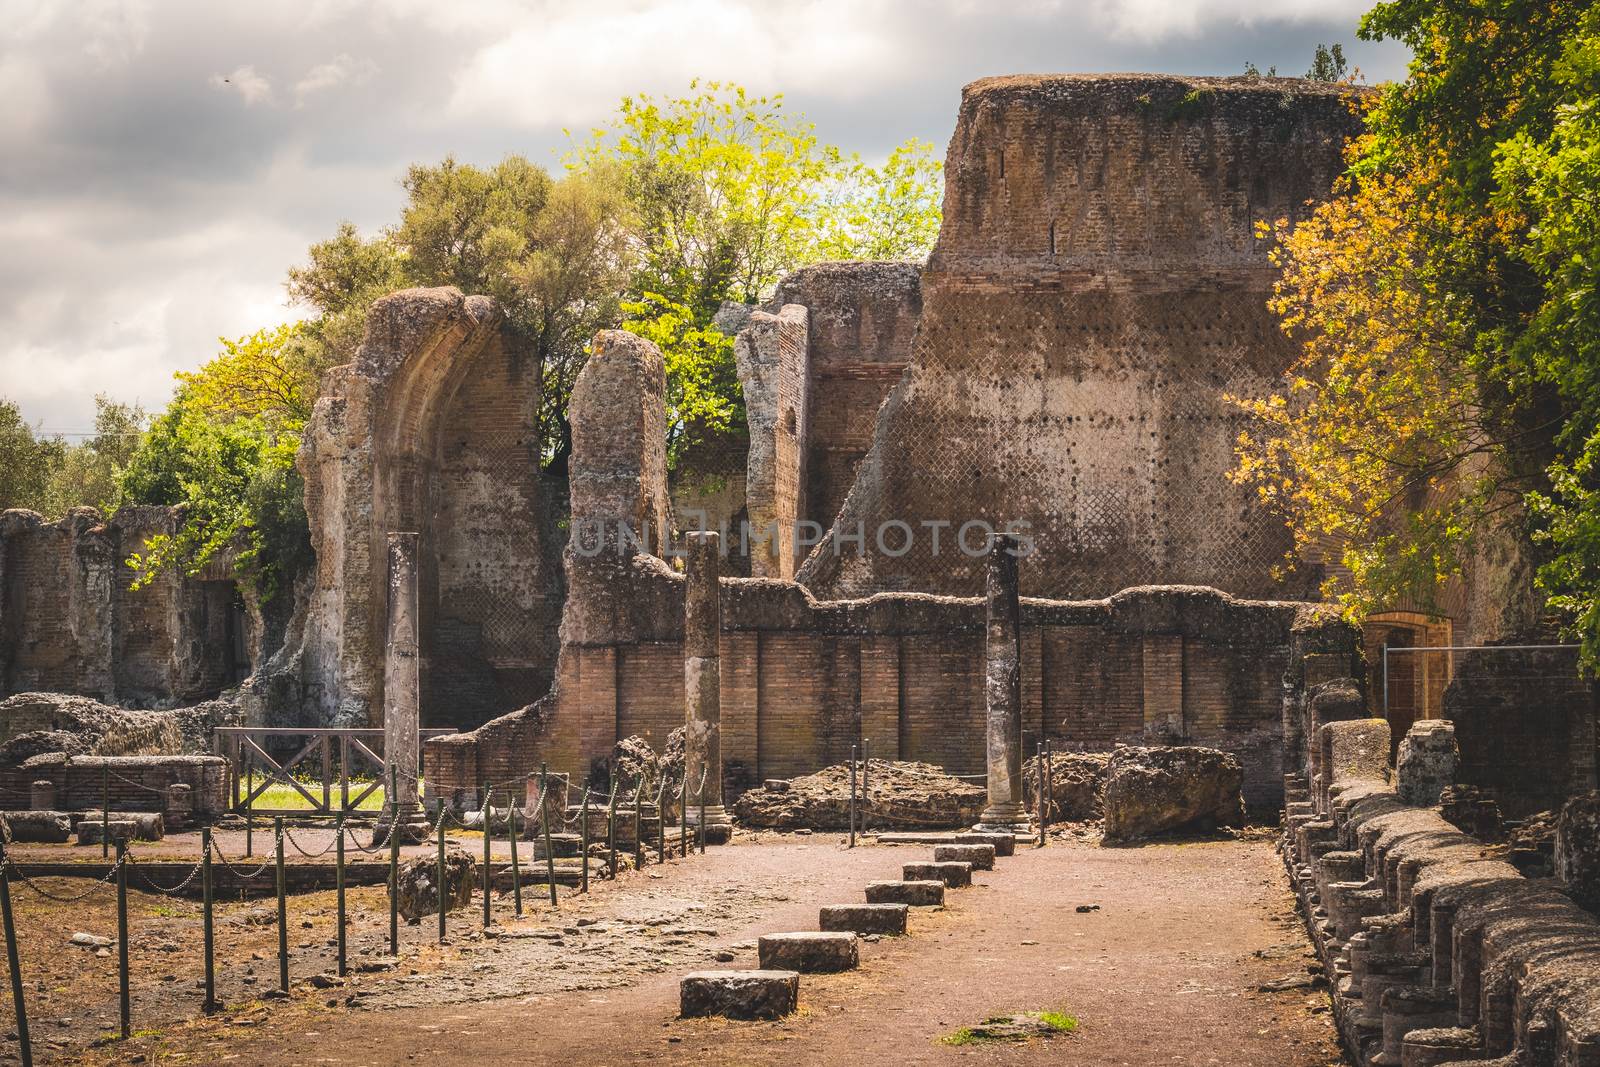 villa adriana in Tivoli - Rome - Italy .